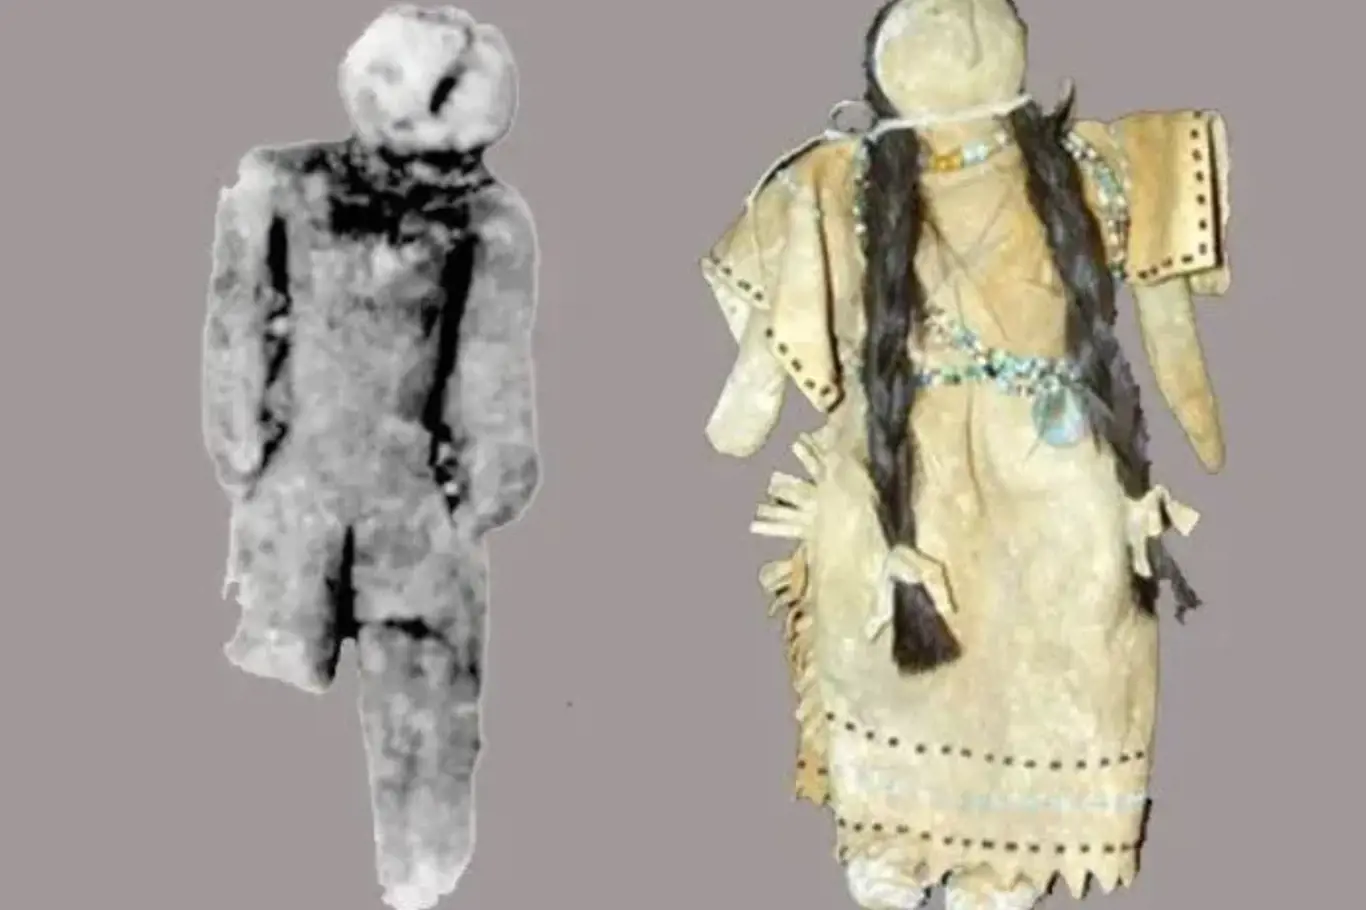 Jiní archeologové tvrdí, že artefakt je panenkou vyrobenou v 19. století indiány z kmene Pocatello či je figurka často přirovnávána k Tan-tanské venuši.